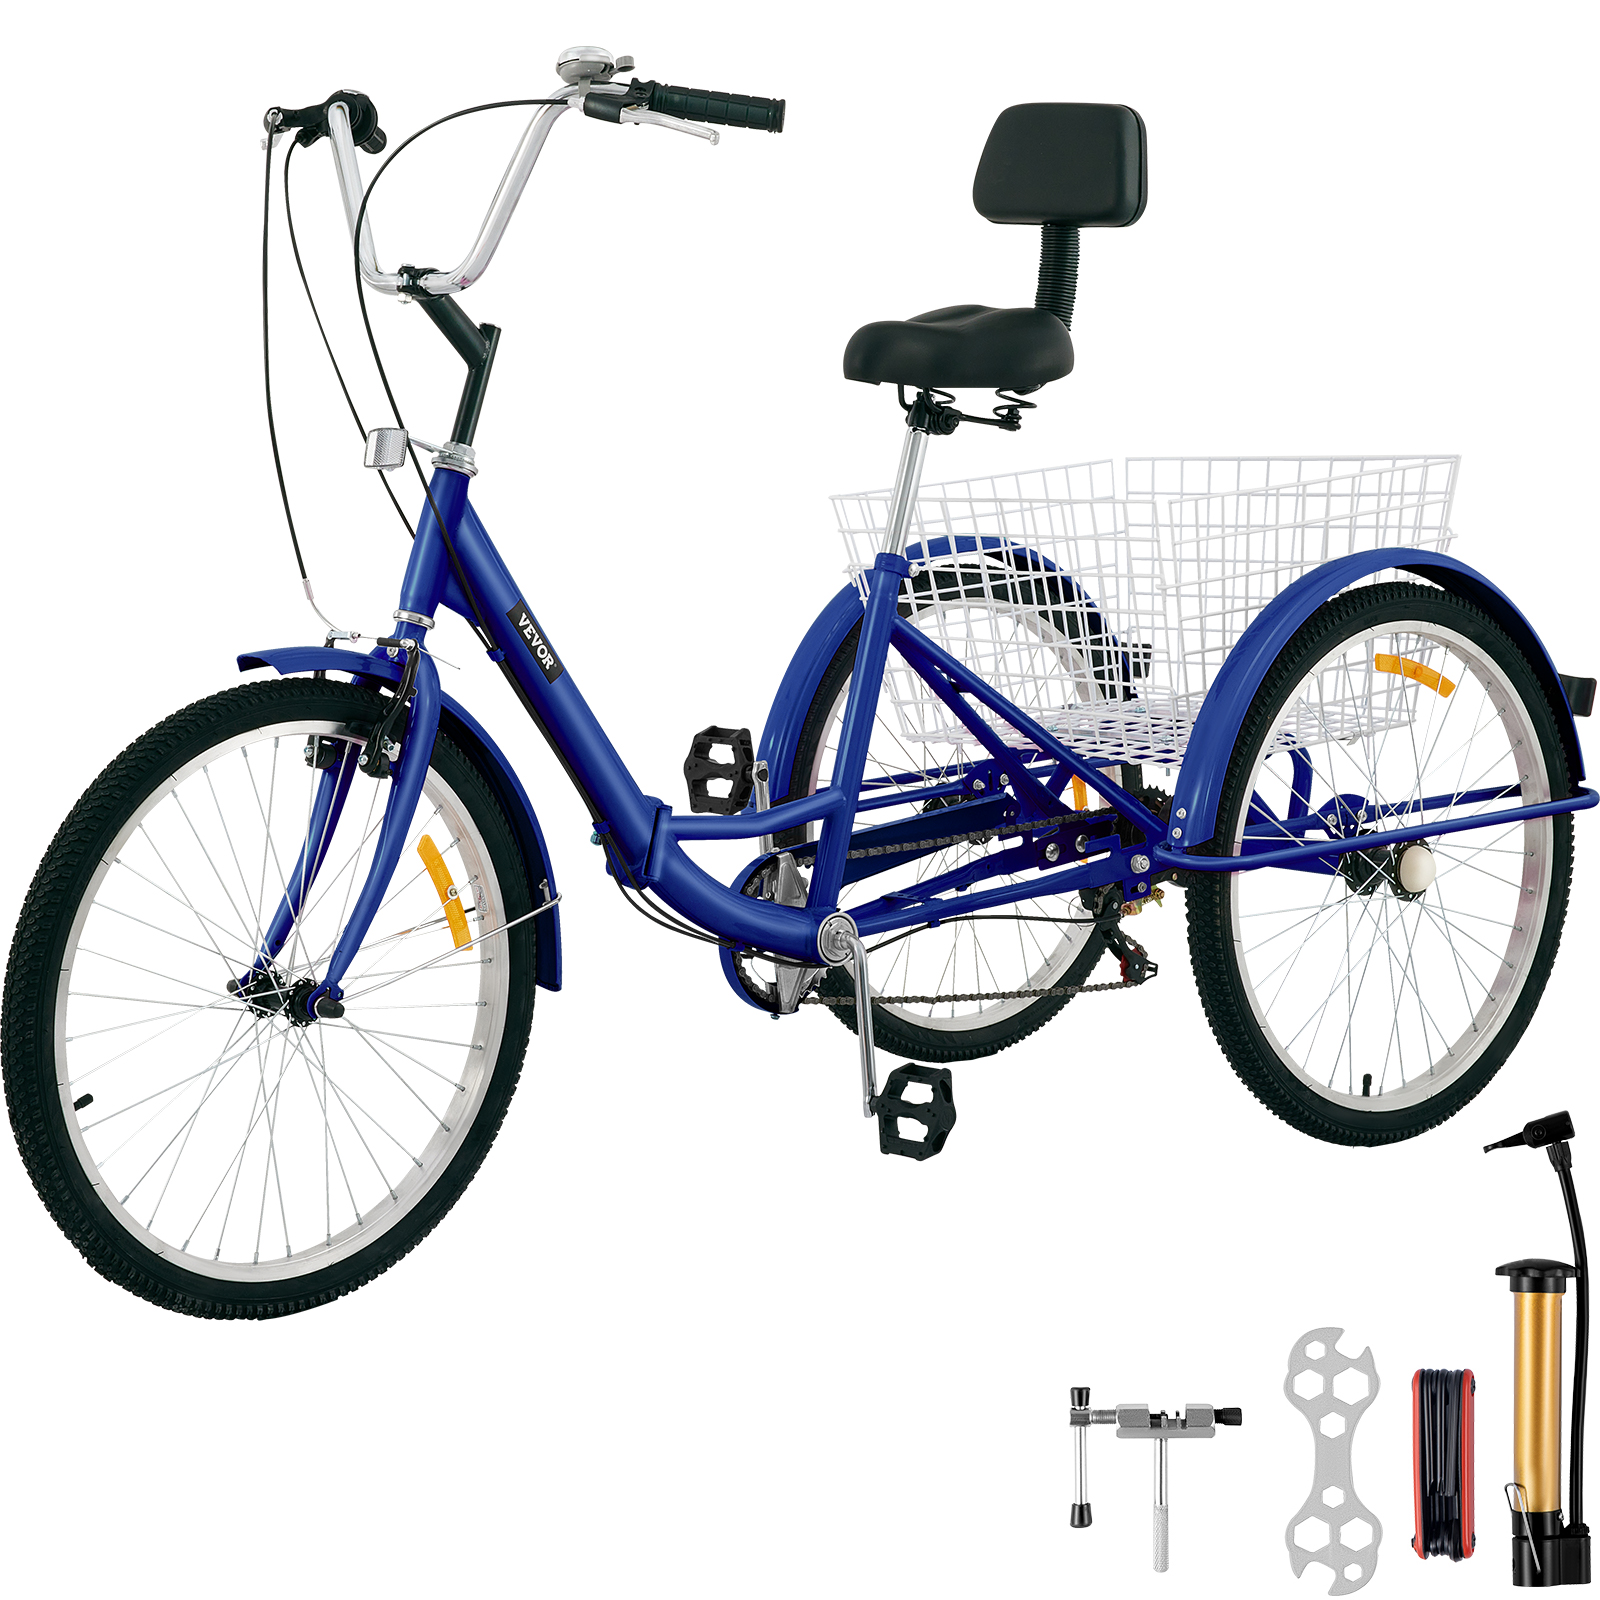 segunda mano triciclo adulto/adulto eléctrico 3 ruedas de carga triciclo/7  velocidad adulto triciclo